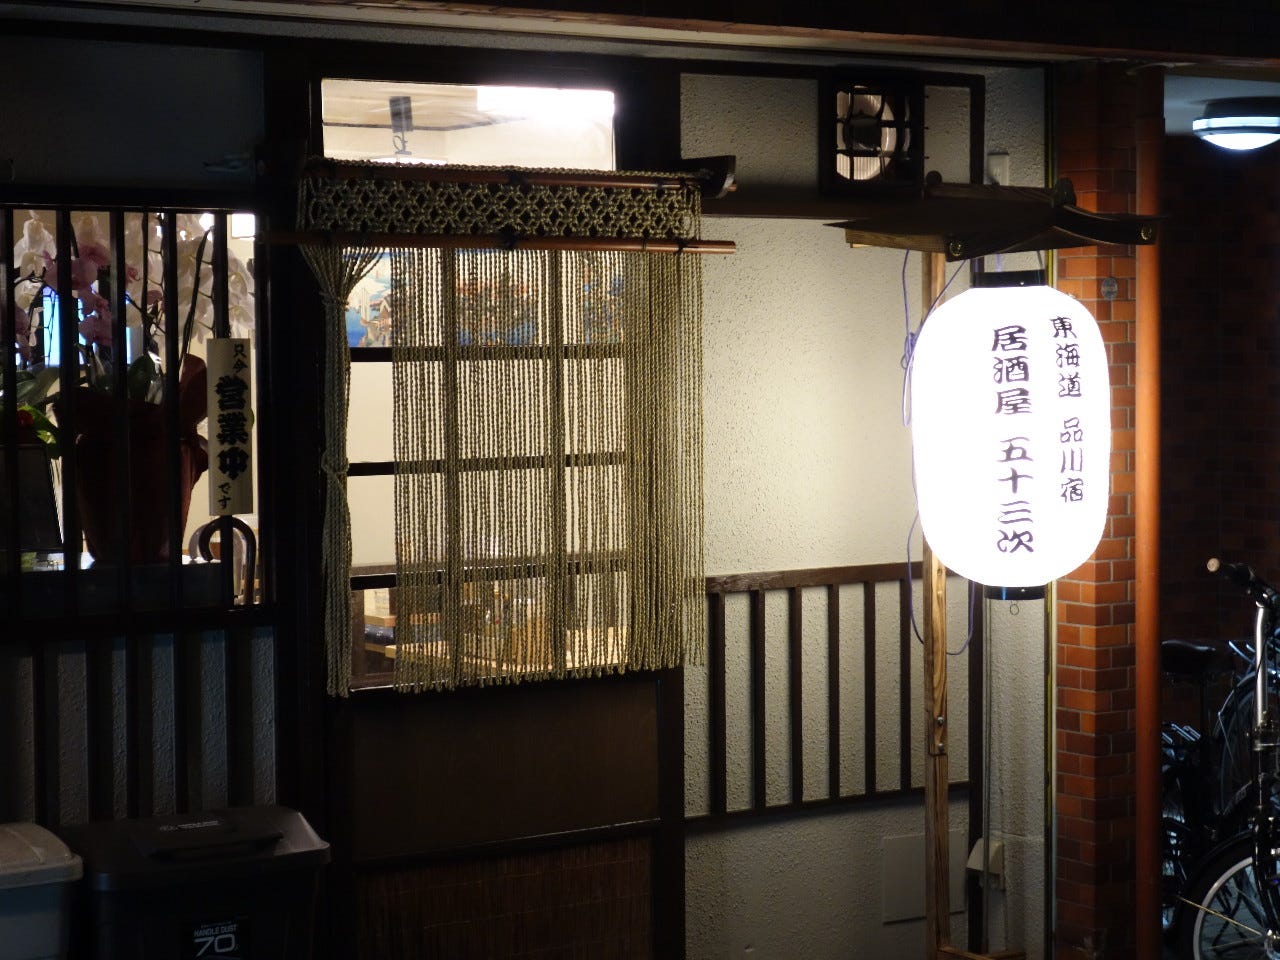 和食居酒屋五十三次 品川 居酒屋 Gurunavi 日本美食餐厅指南